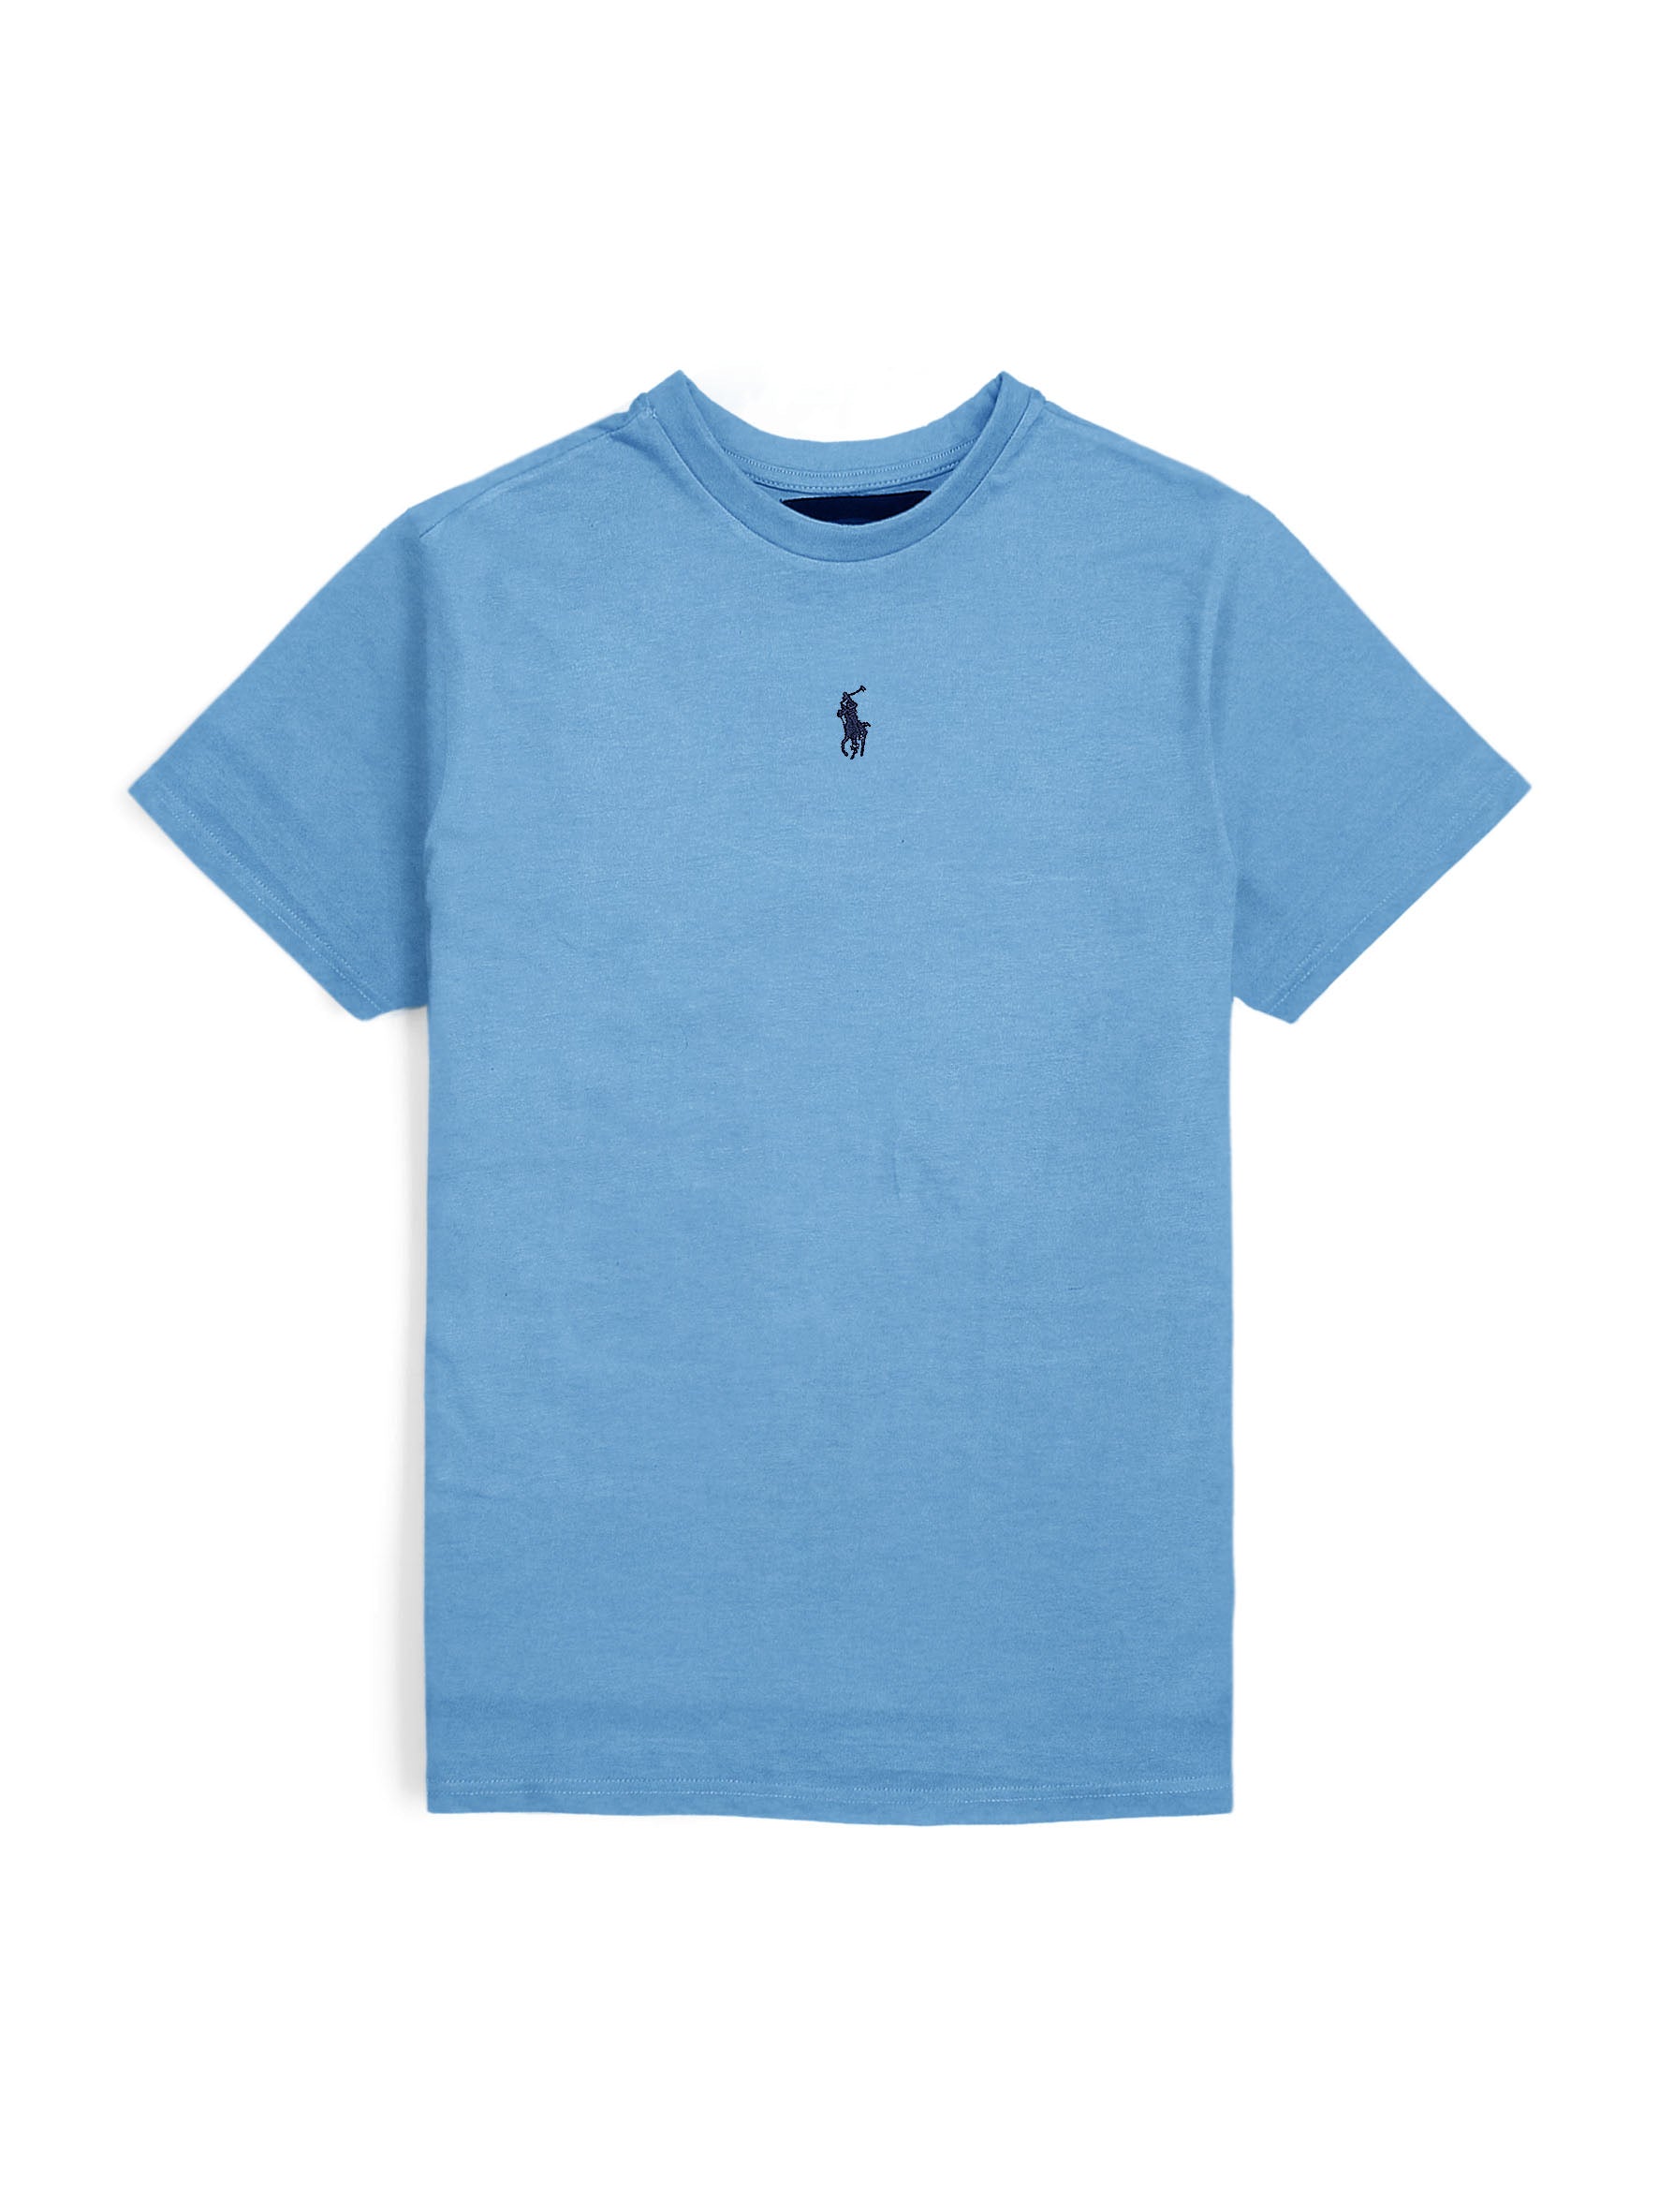 RL Basic soft cotton sky T-Shirt (00314)